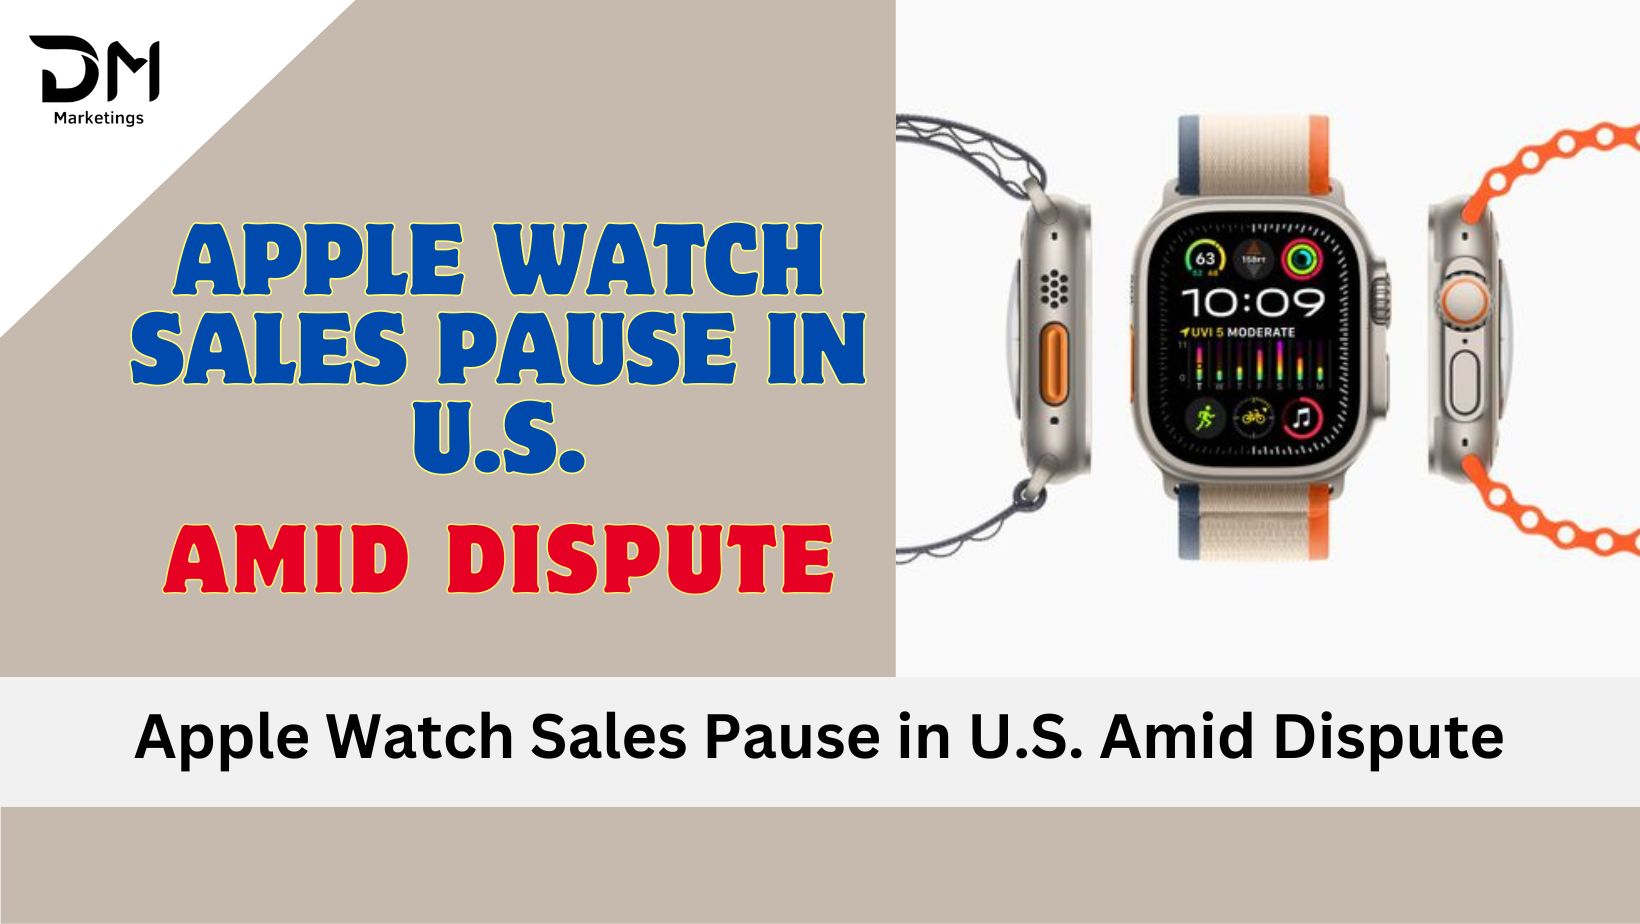 Apple Watch Sales Pause in U.S.